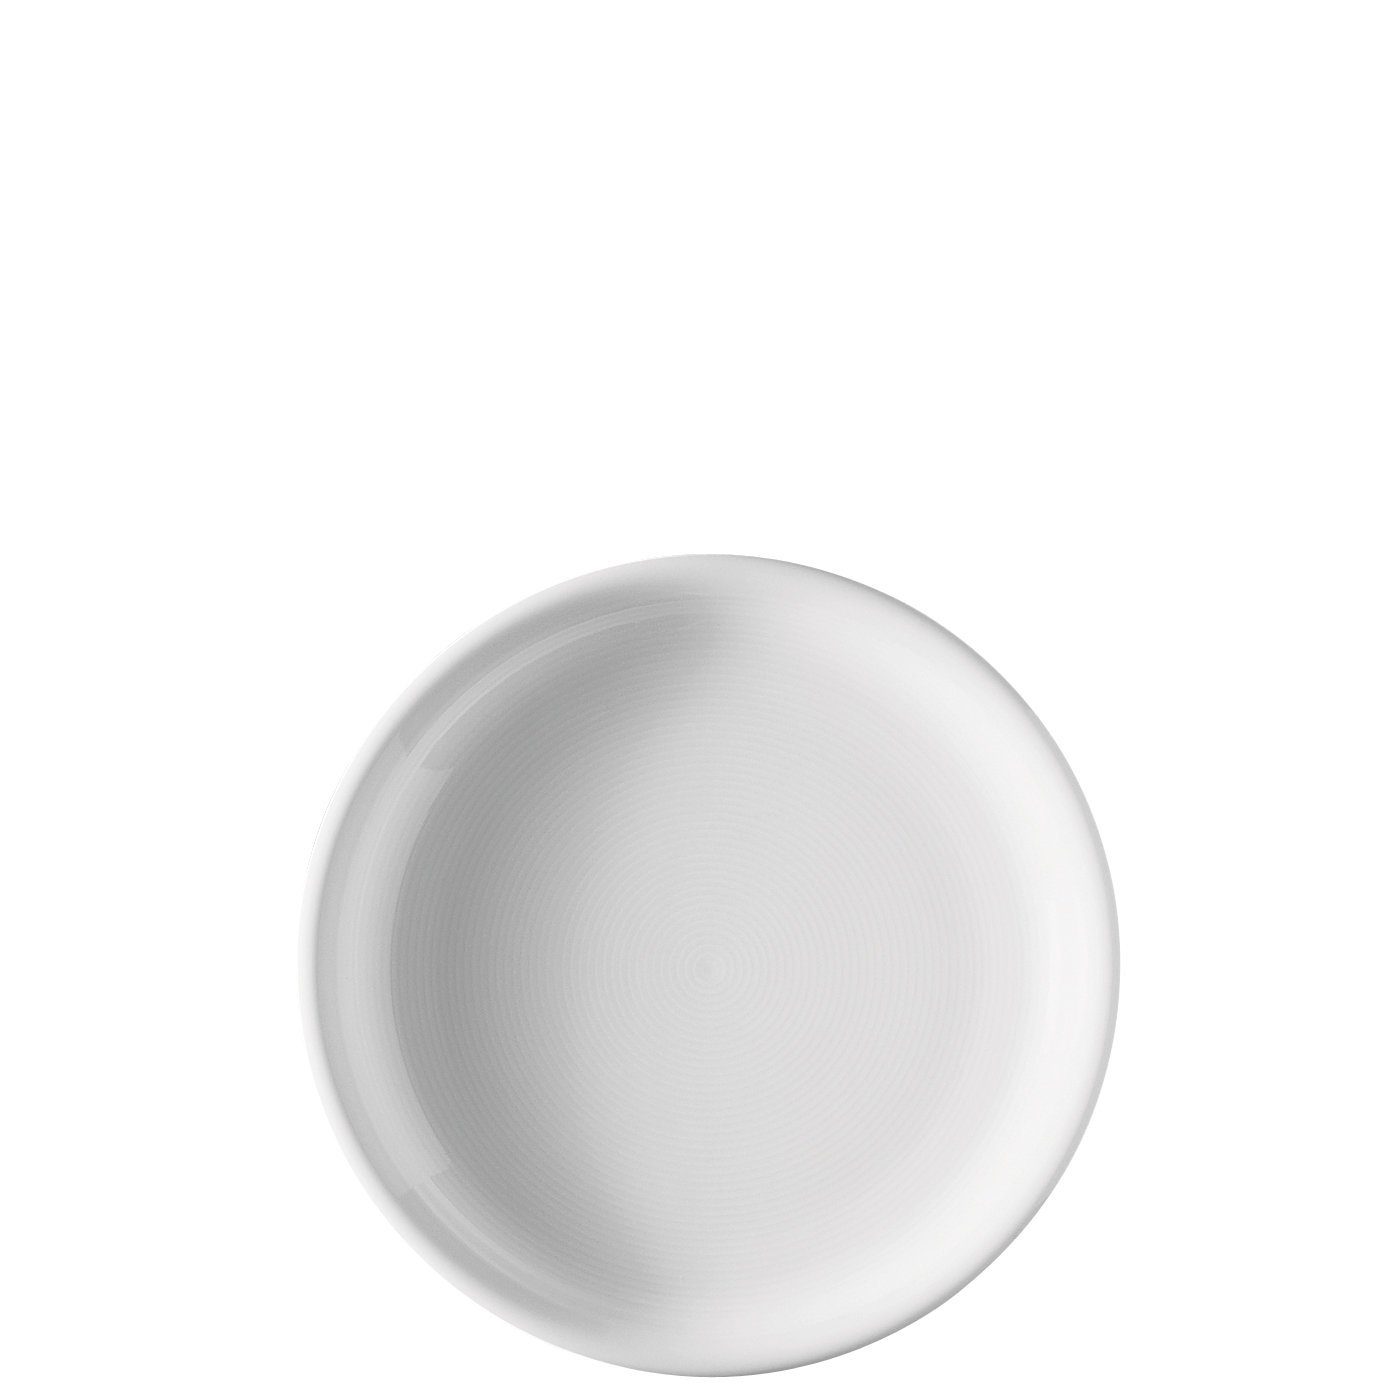 TREND cm - Thomas Porzellan, spülmaschinenfest und Stück, mikrowellengeeignet - Weiß (4 20 4 Frühstücksteller Porzellan Frühstücksteller St),